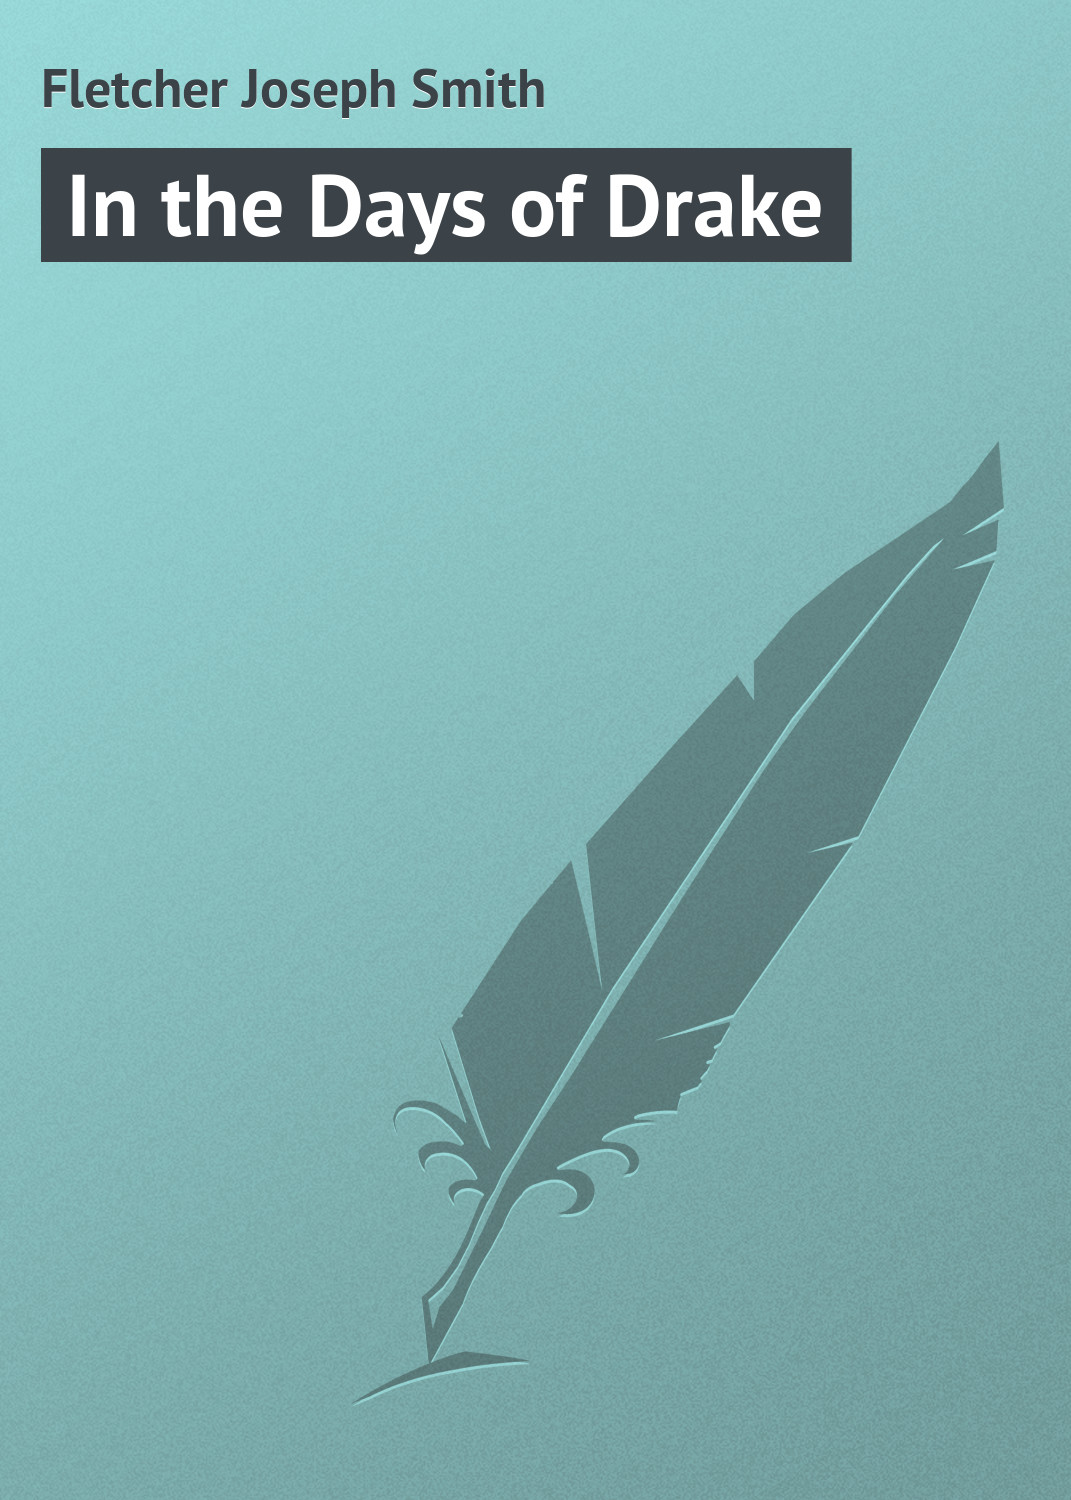 Книга In the Days of Drake из серии , созданная Joseph Fletcher, может относится к жанру Зарубежная классика. Стоимость электронной книги In the Days of Drake с идентификатором 23149243 составляет 5.99 руб.